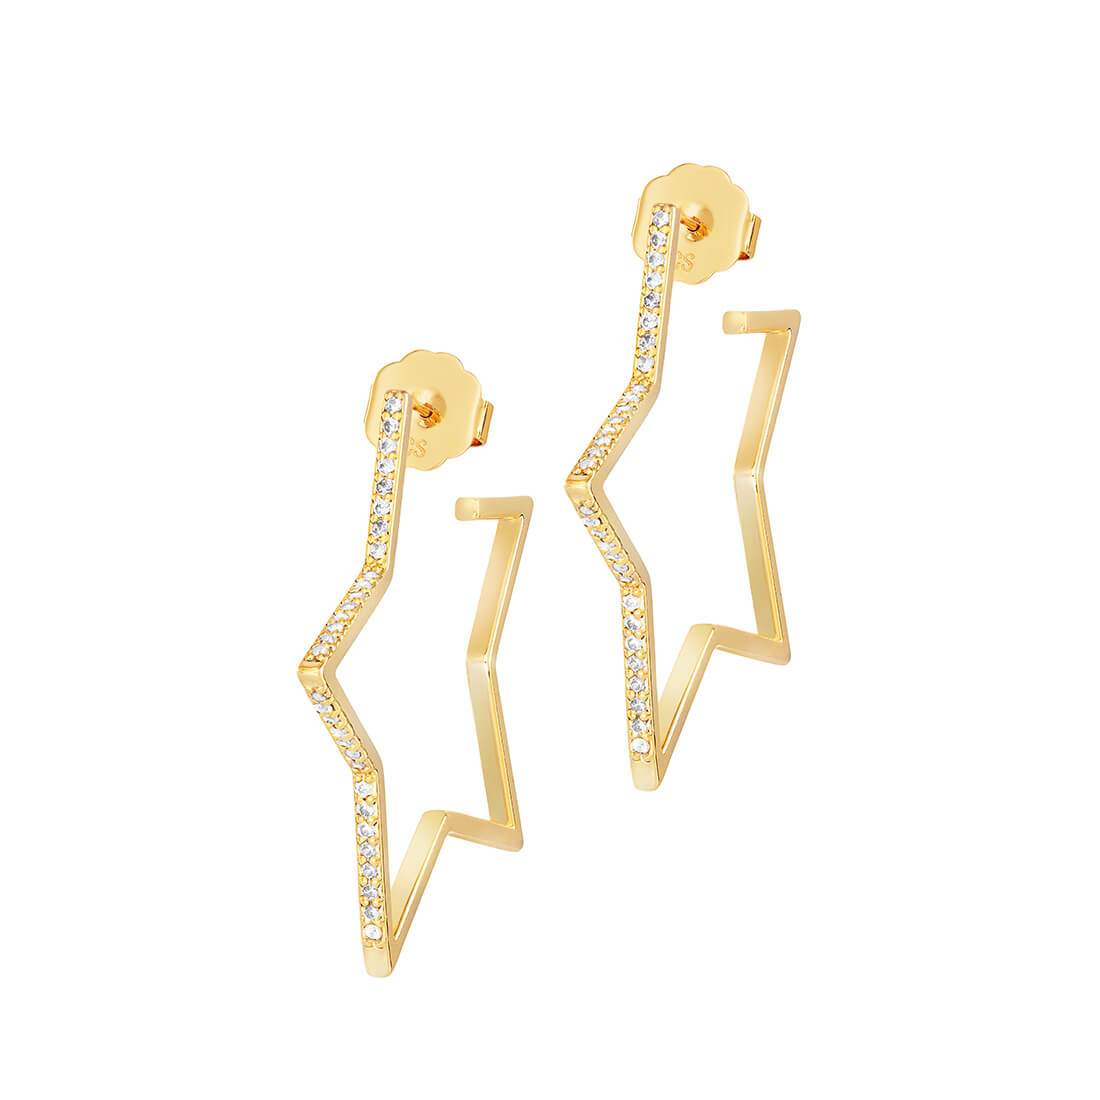 Nova Earrings - Gold